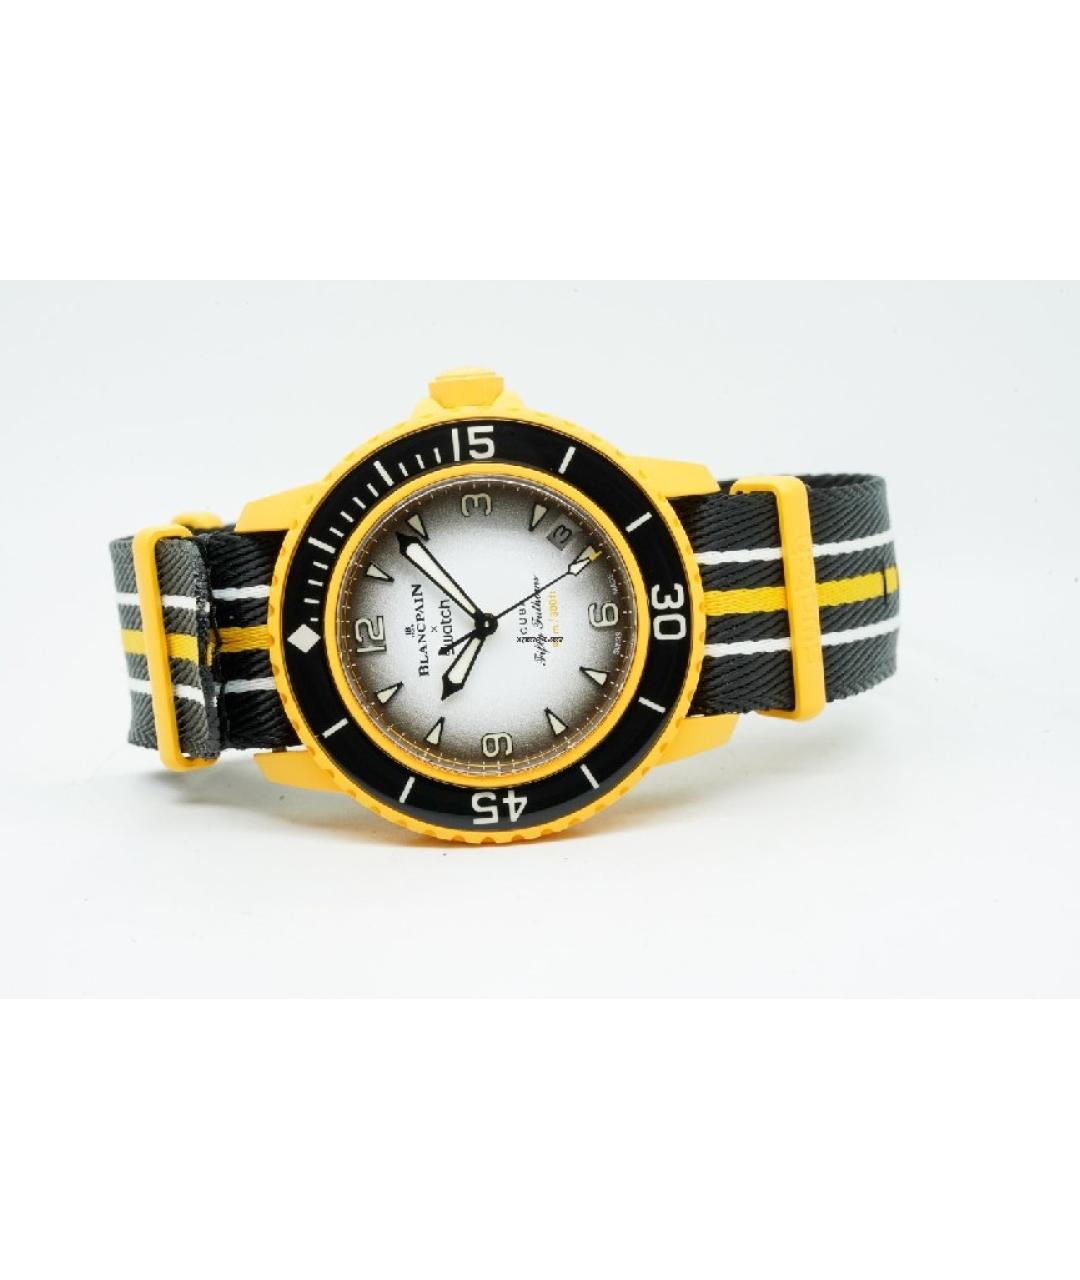 Blancpain Желтые стальные часы, фото 2